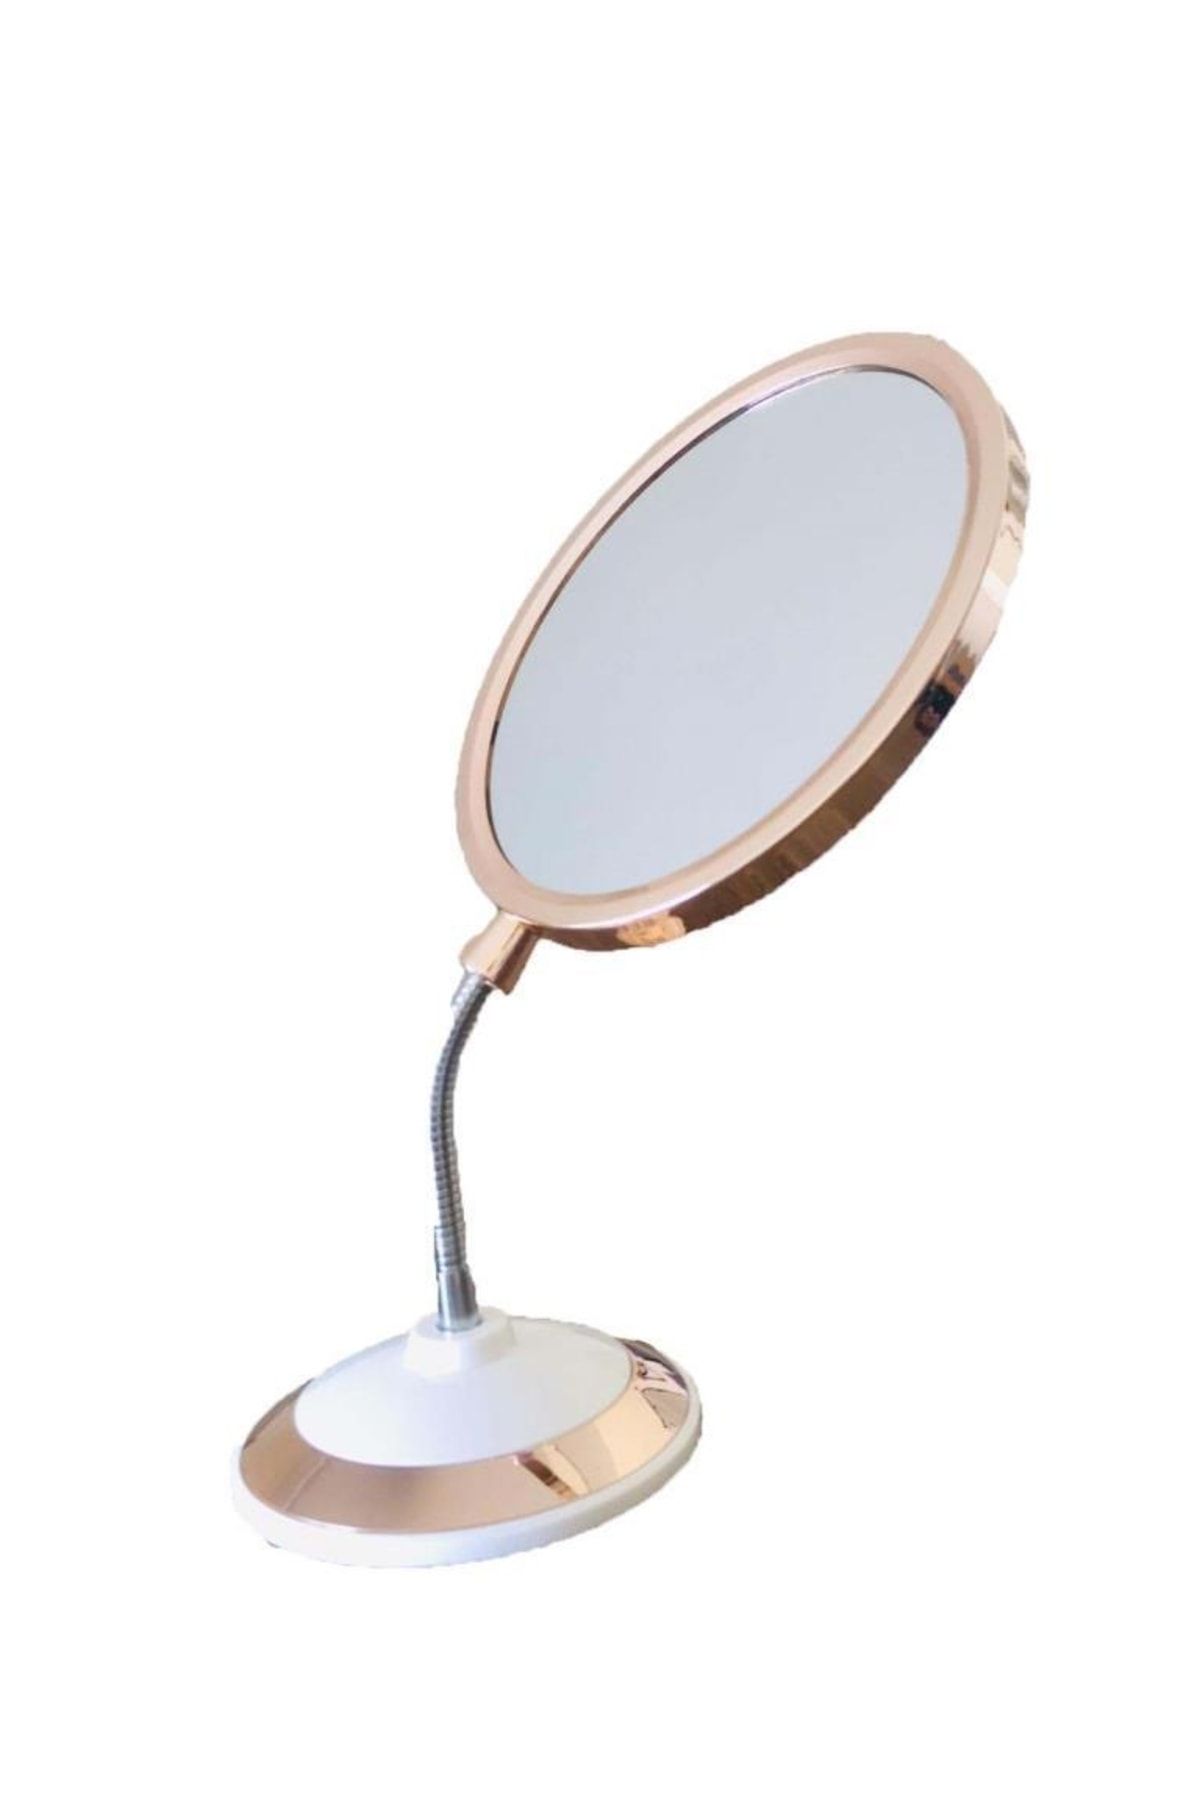 SUME Çift Taraflı 360 Derece Eğilebilir Büyüteçli Makyaj Aynası